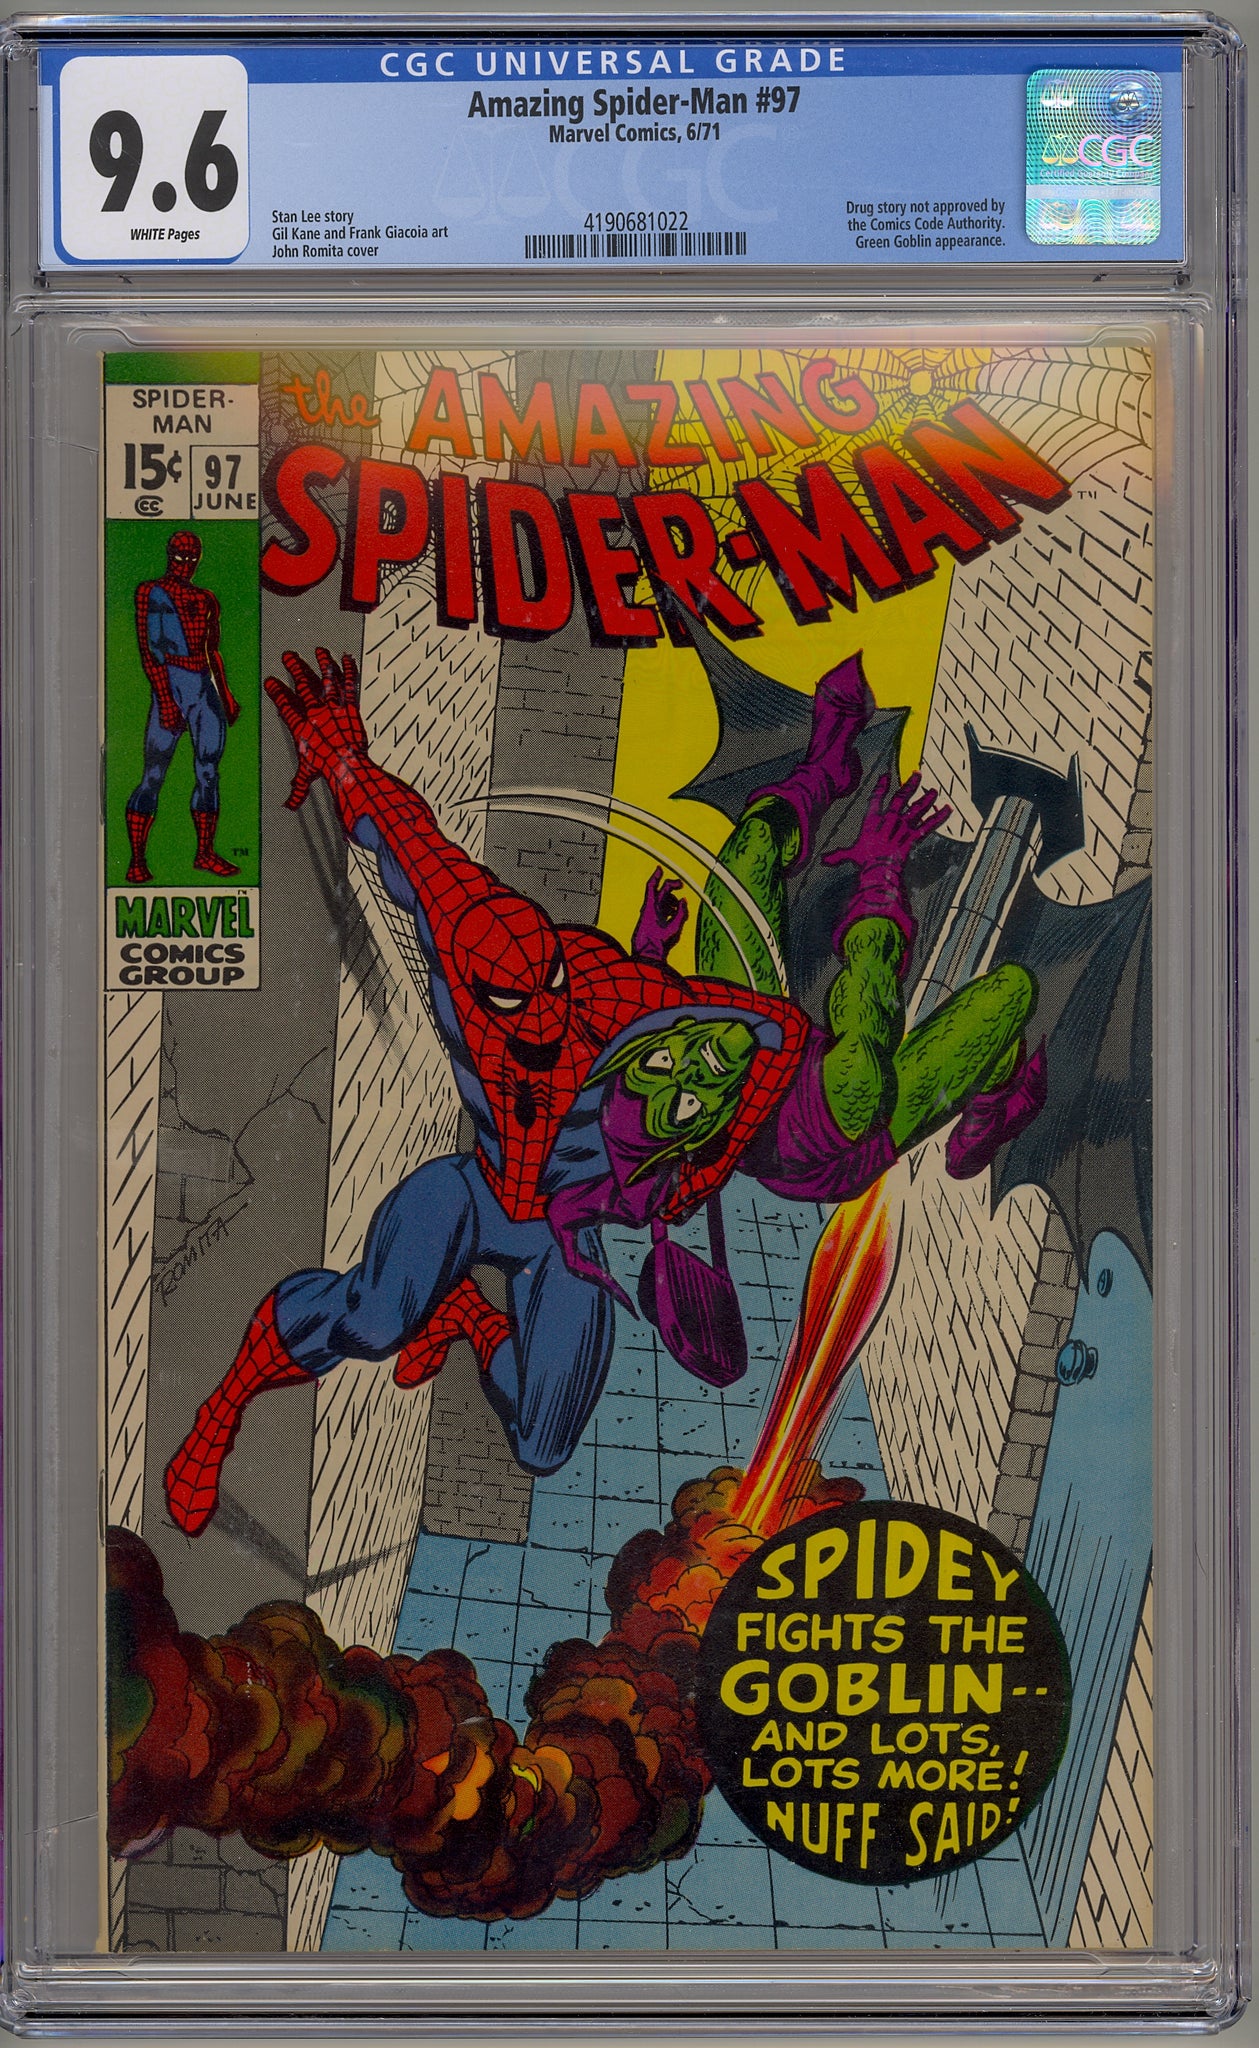 Amazing Spider-Man #97 (1971) Green Goblin, drug issue